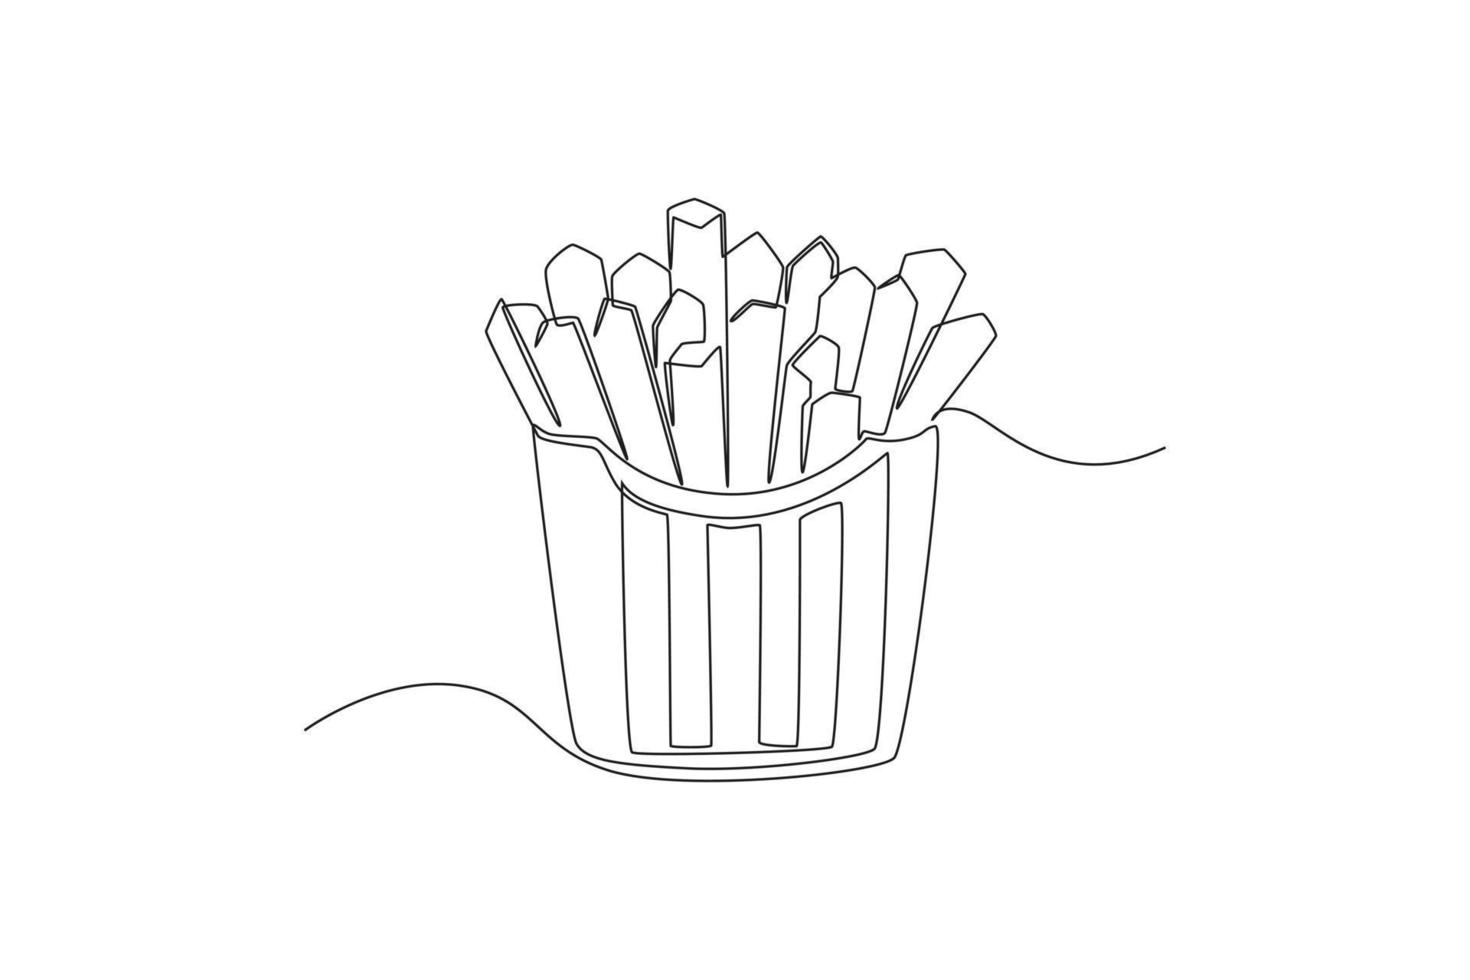 Einzelne einzeilige Zeichnung von Pommes Frites oder Bratkartoffeln in einem Karton. welternährungstag konzept. ununterbrochene Linie zeichnen grafische Vektorillustration des Designs. vektor